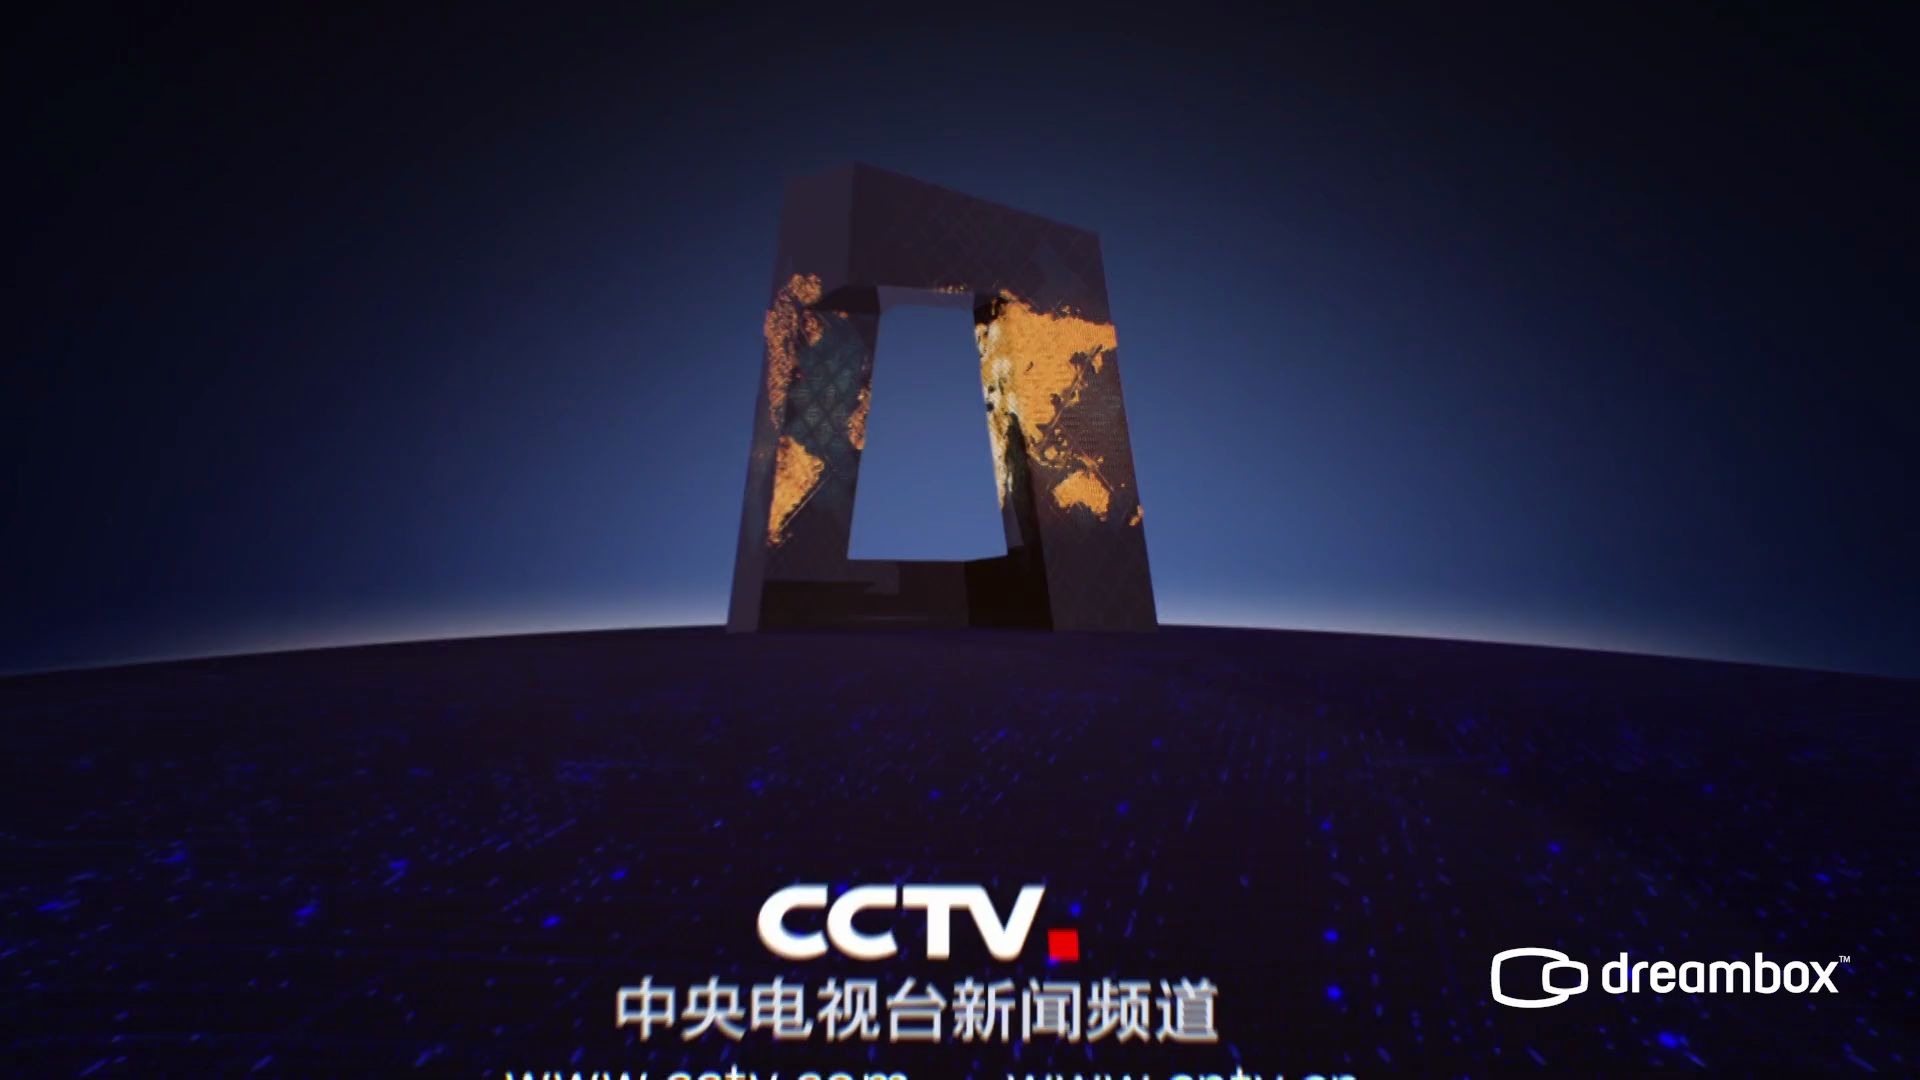 CCTV12栏目片头图片